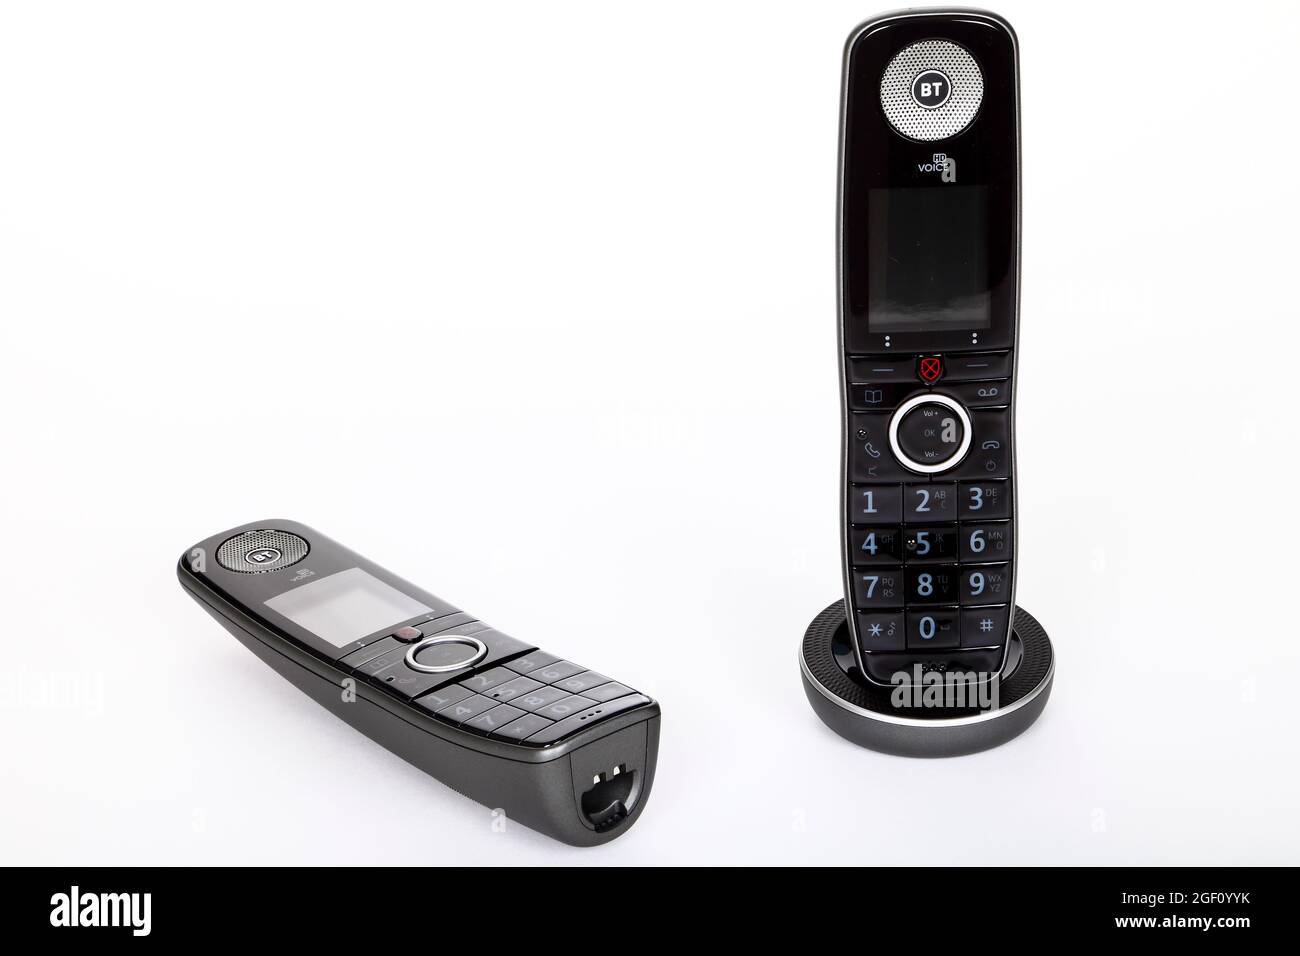 Nuovo telefono domestico digitale avanzato BT che utilizza la connessione a banda larga per effettuare chiamate telefoniche di qualità HD. Foto Stock